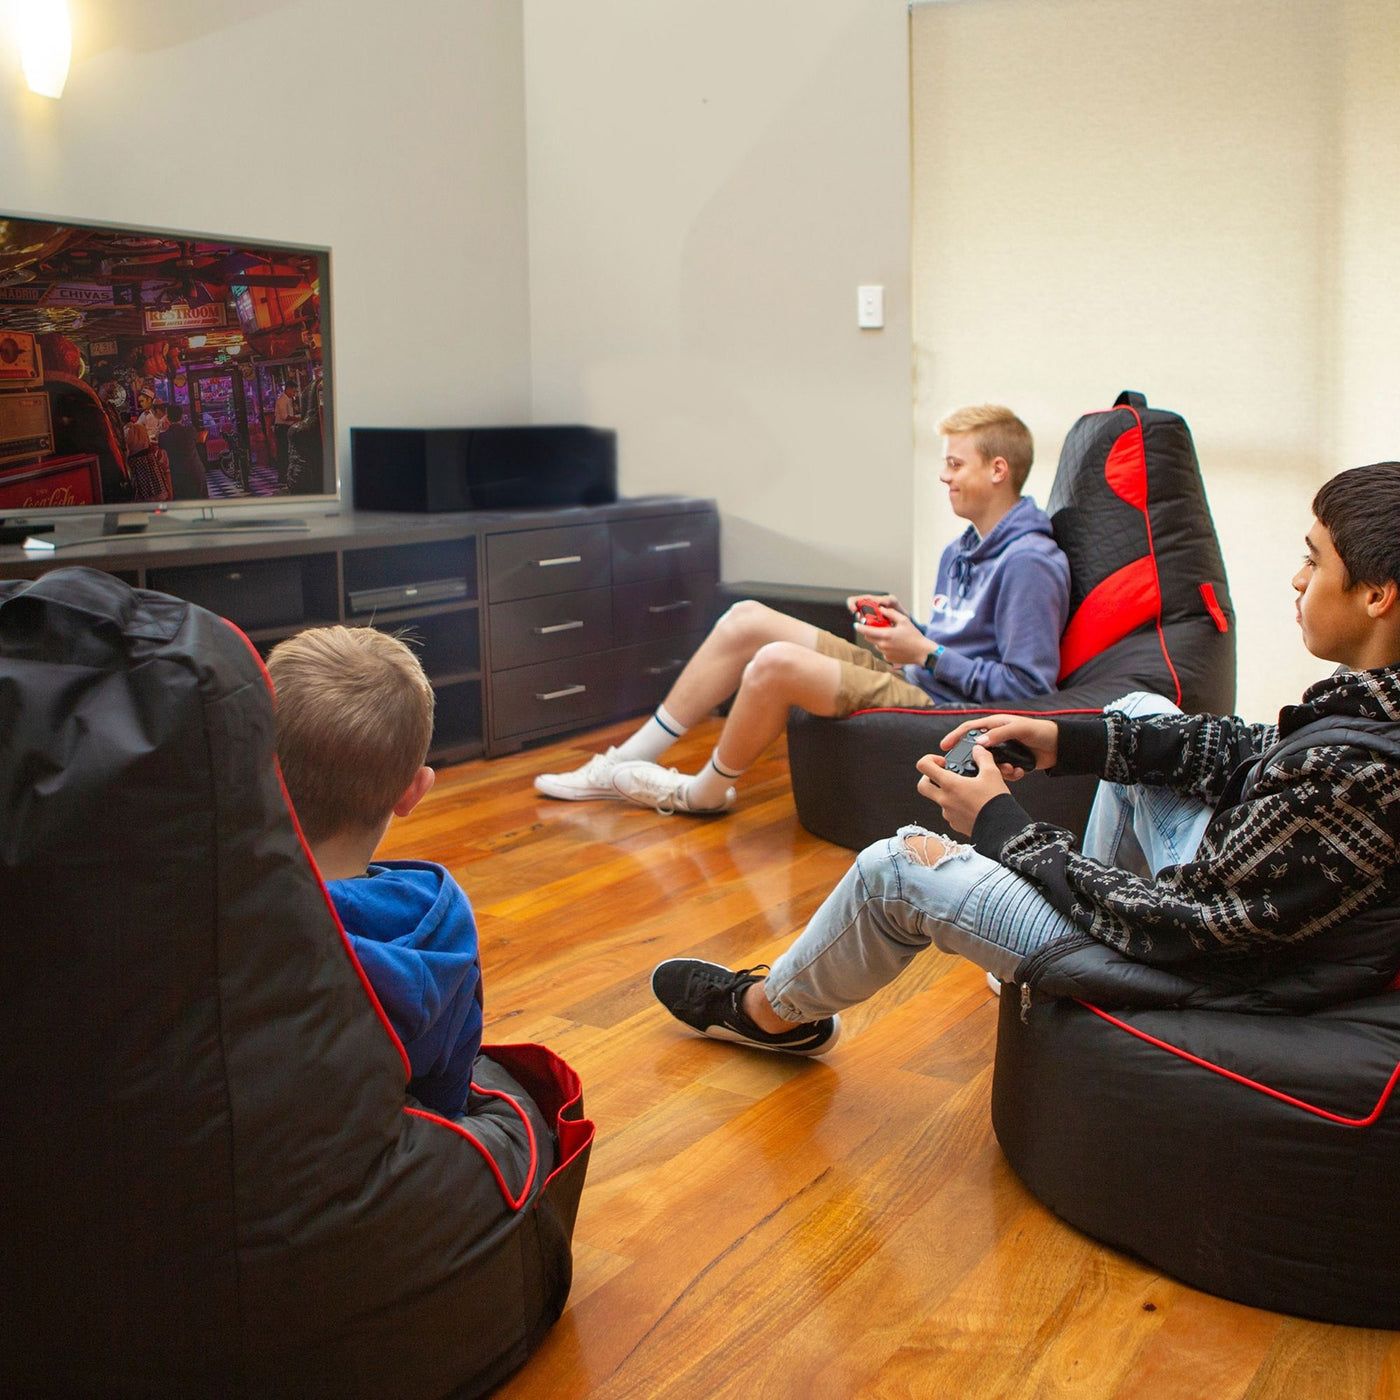 files/teenagers-gaming-in-lounge-room.jpg